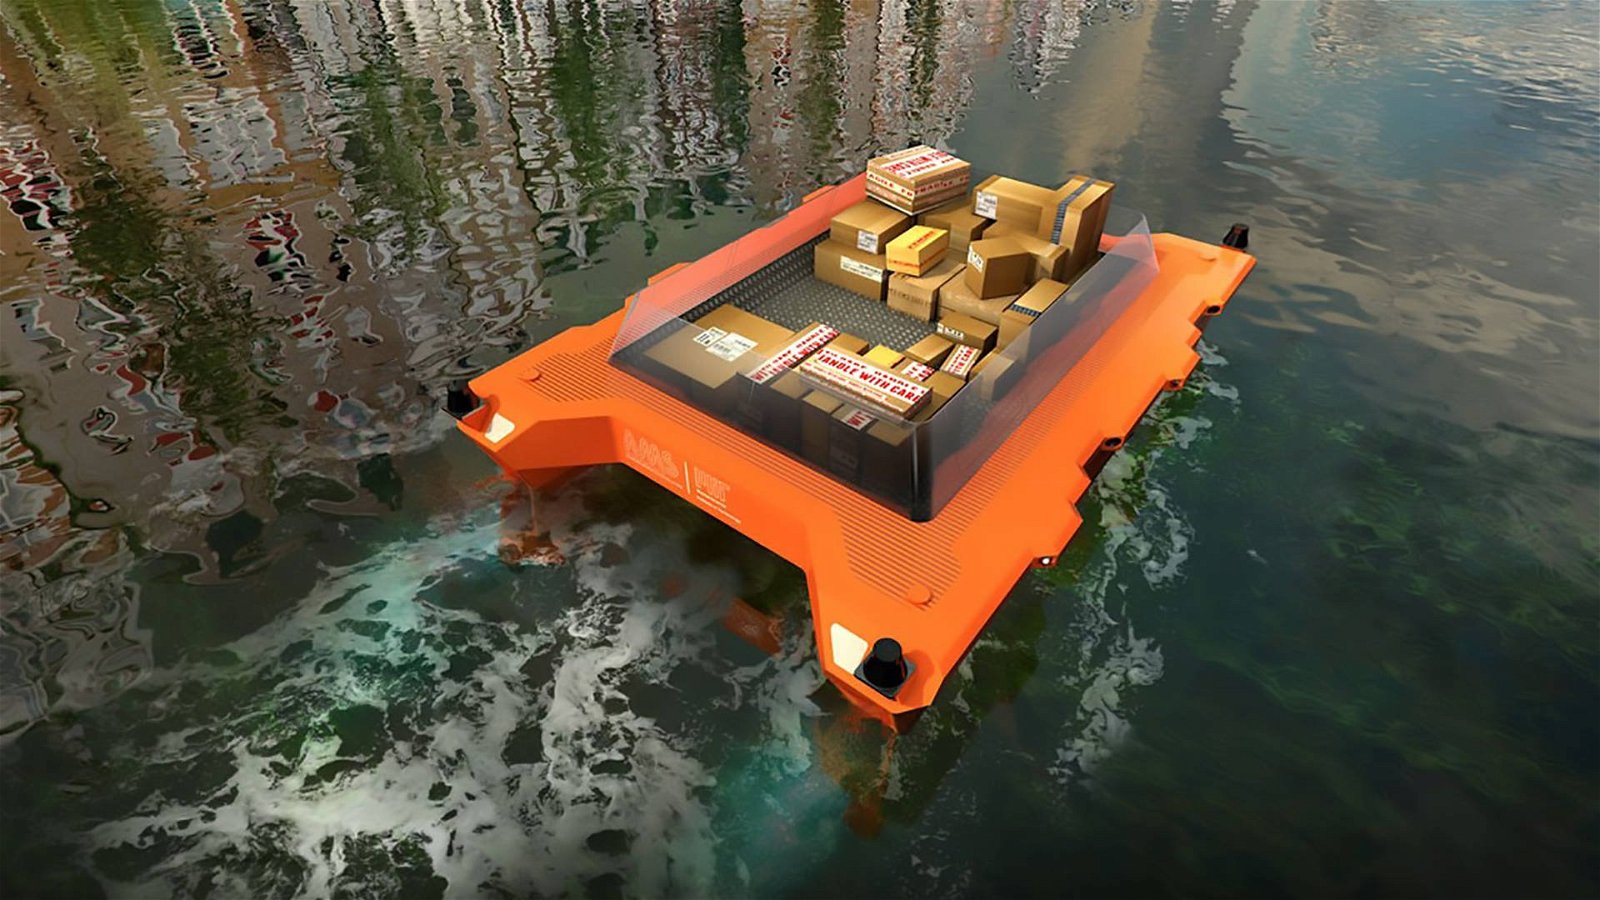 Immagine di Roboat, le barche robot a guida autonoma che trasformeranno i canali di Amsterdam